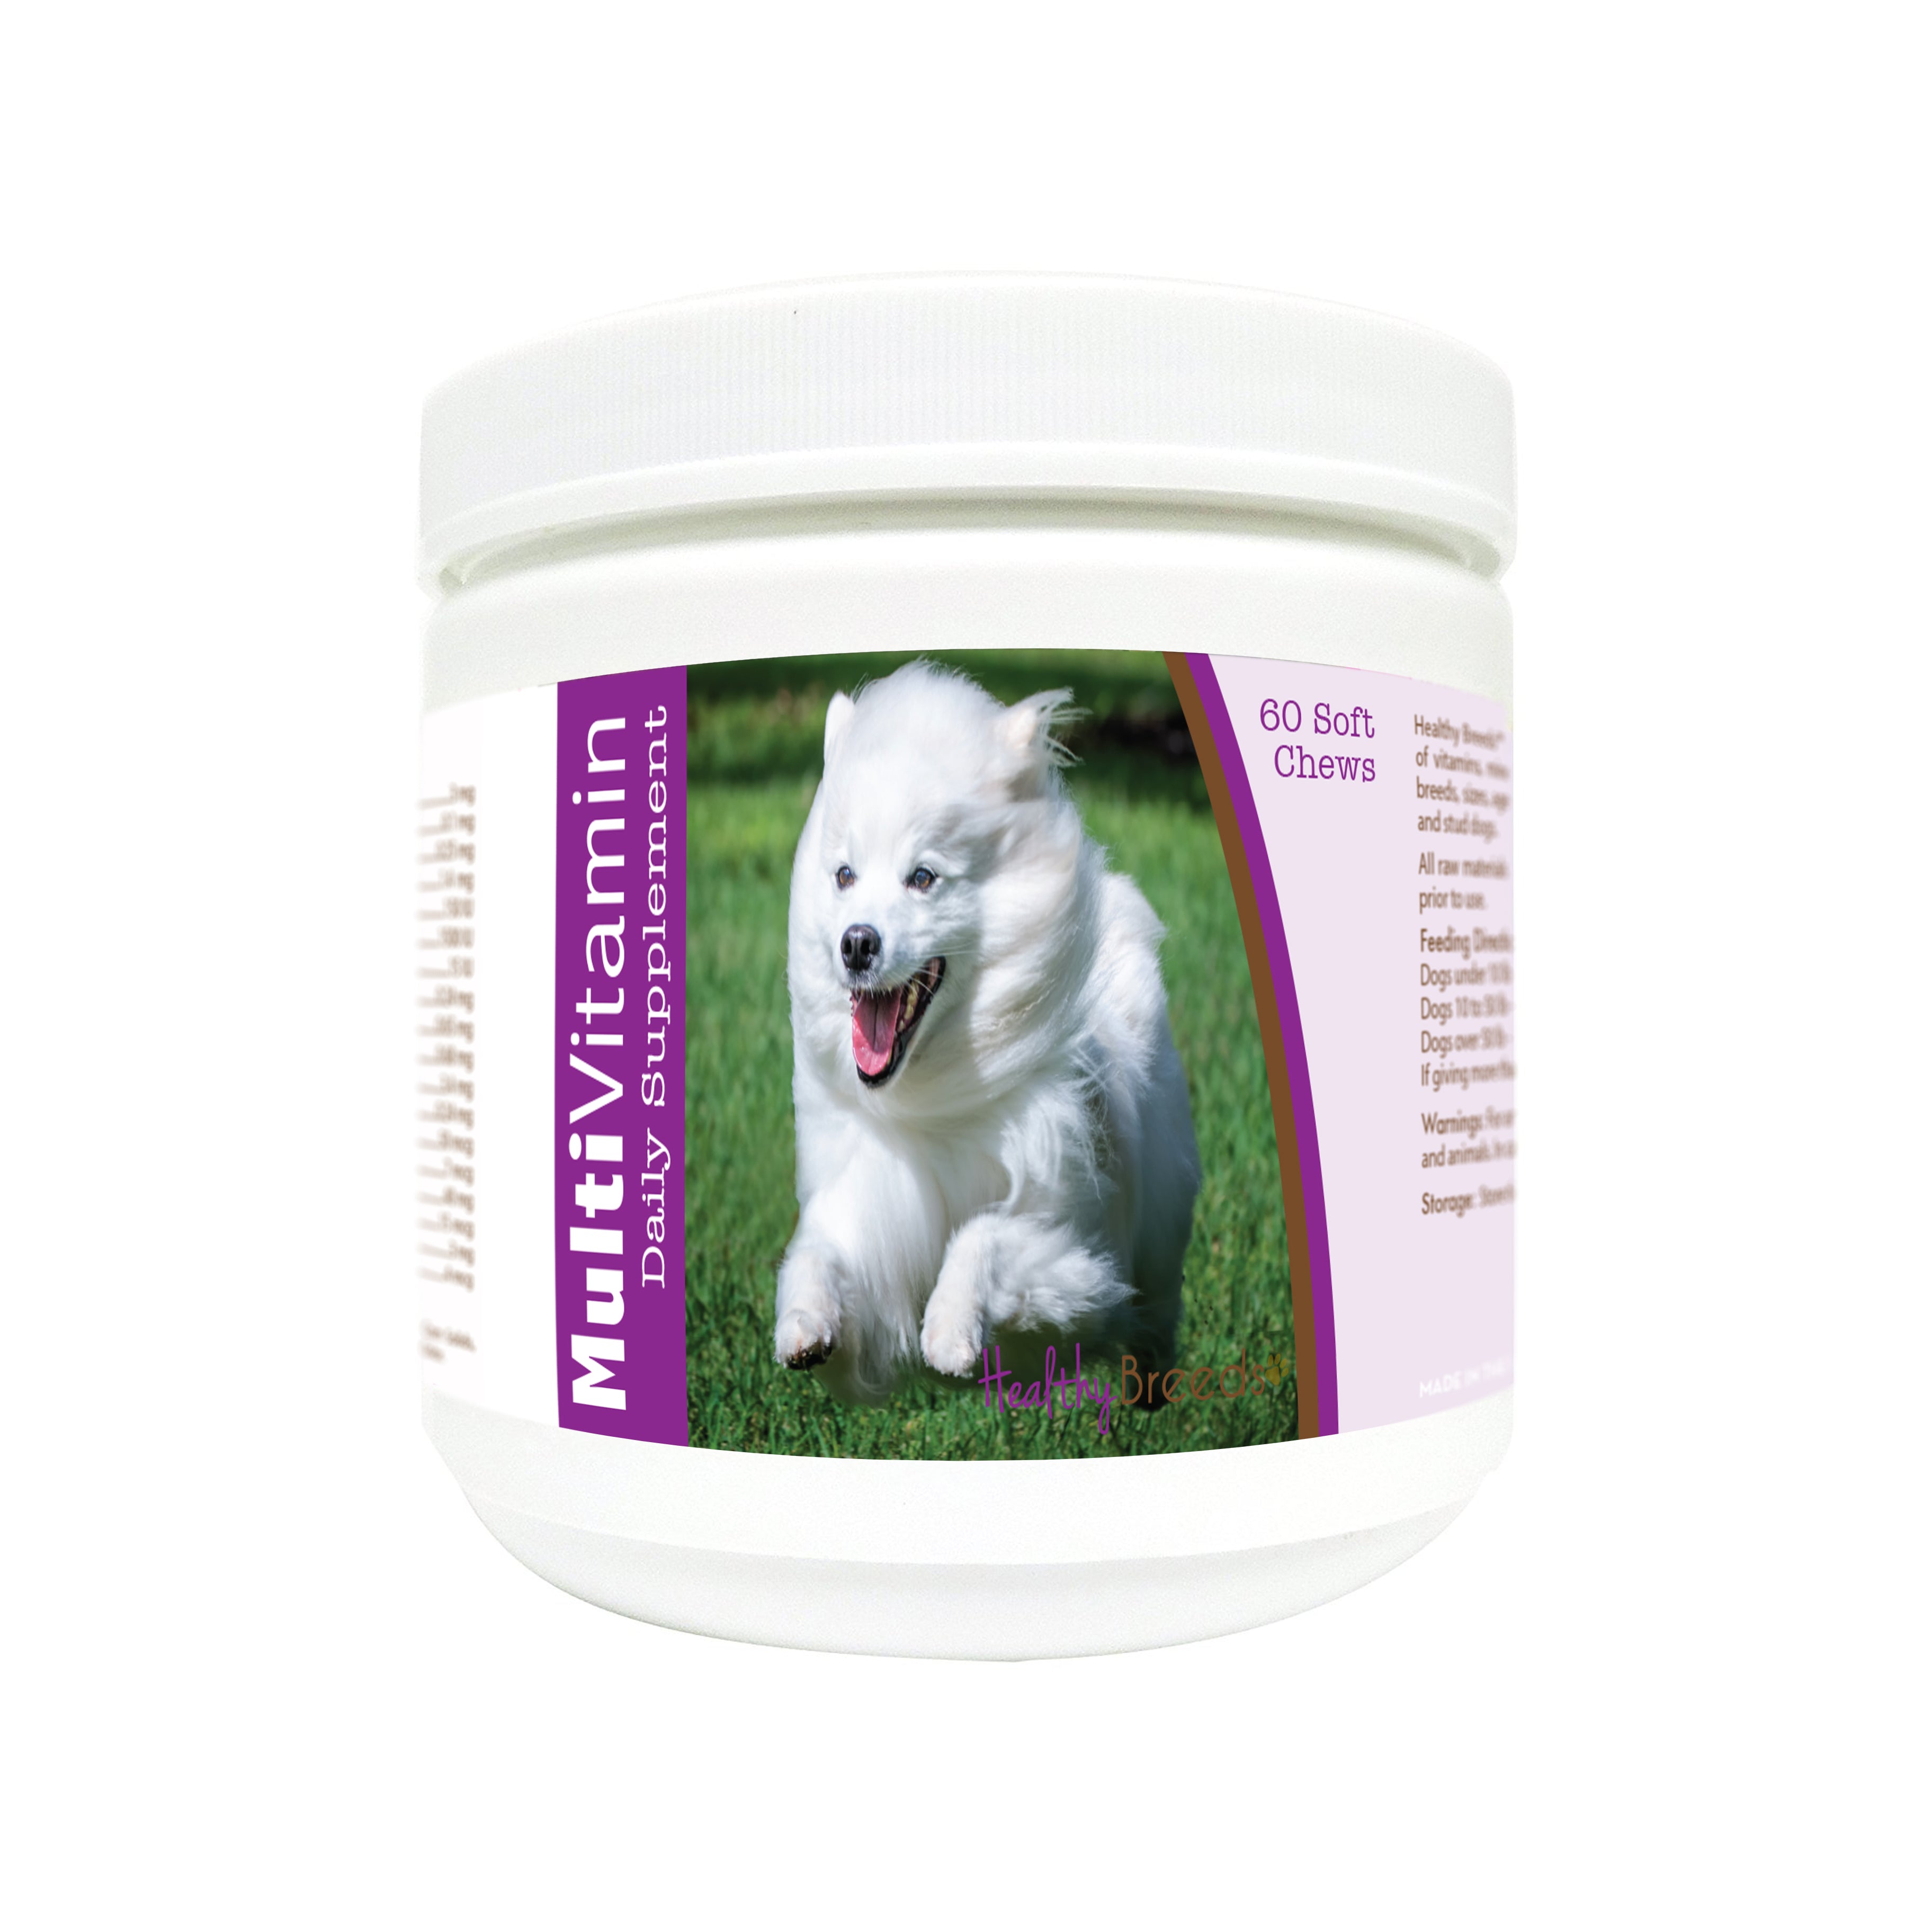 American Eskimo Dog Multi-Vitamin Soft Chews 60 Count